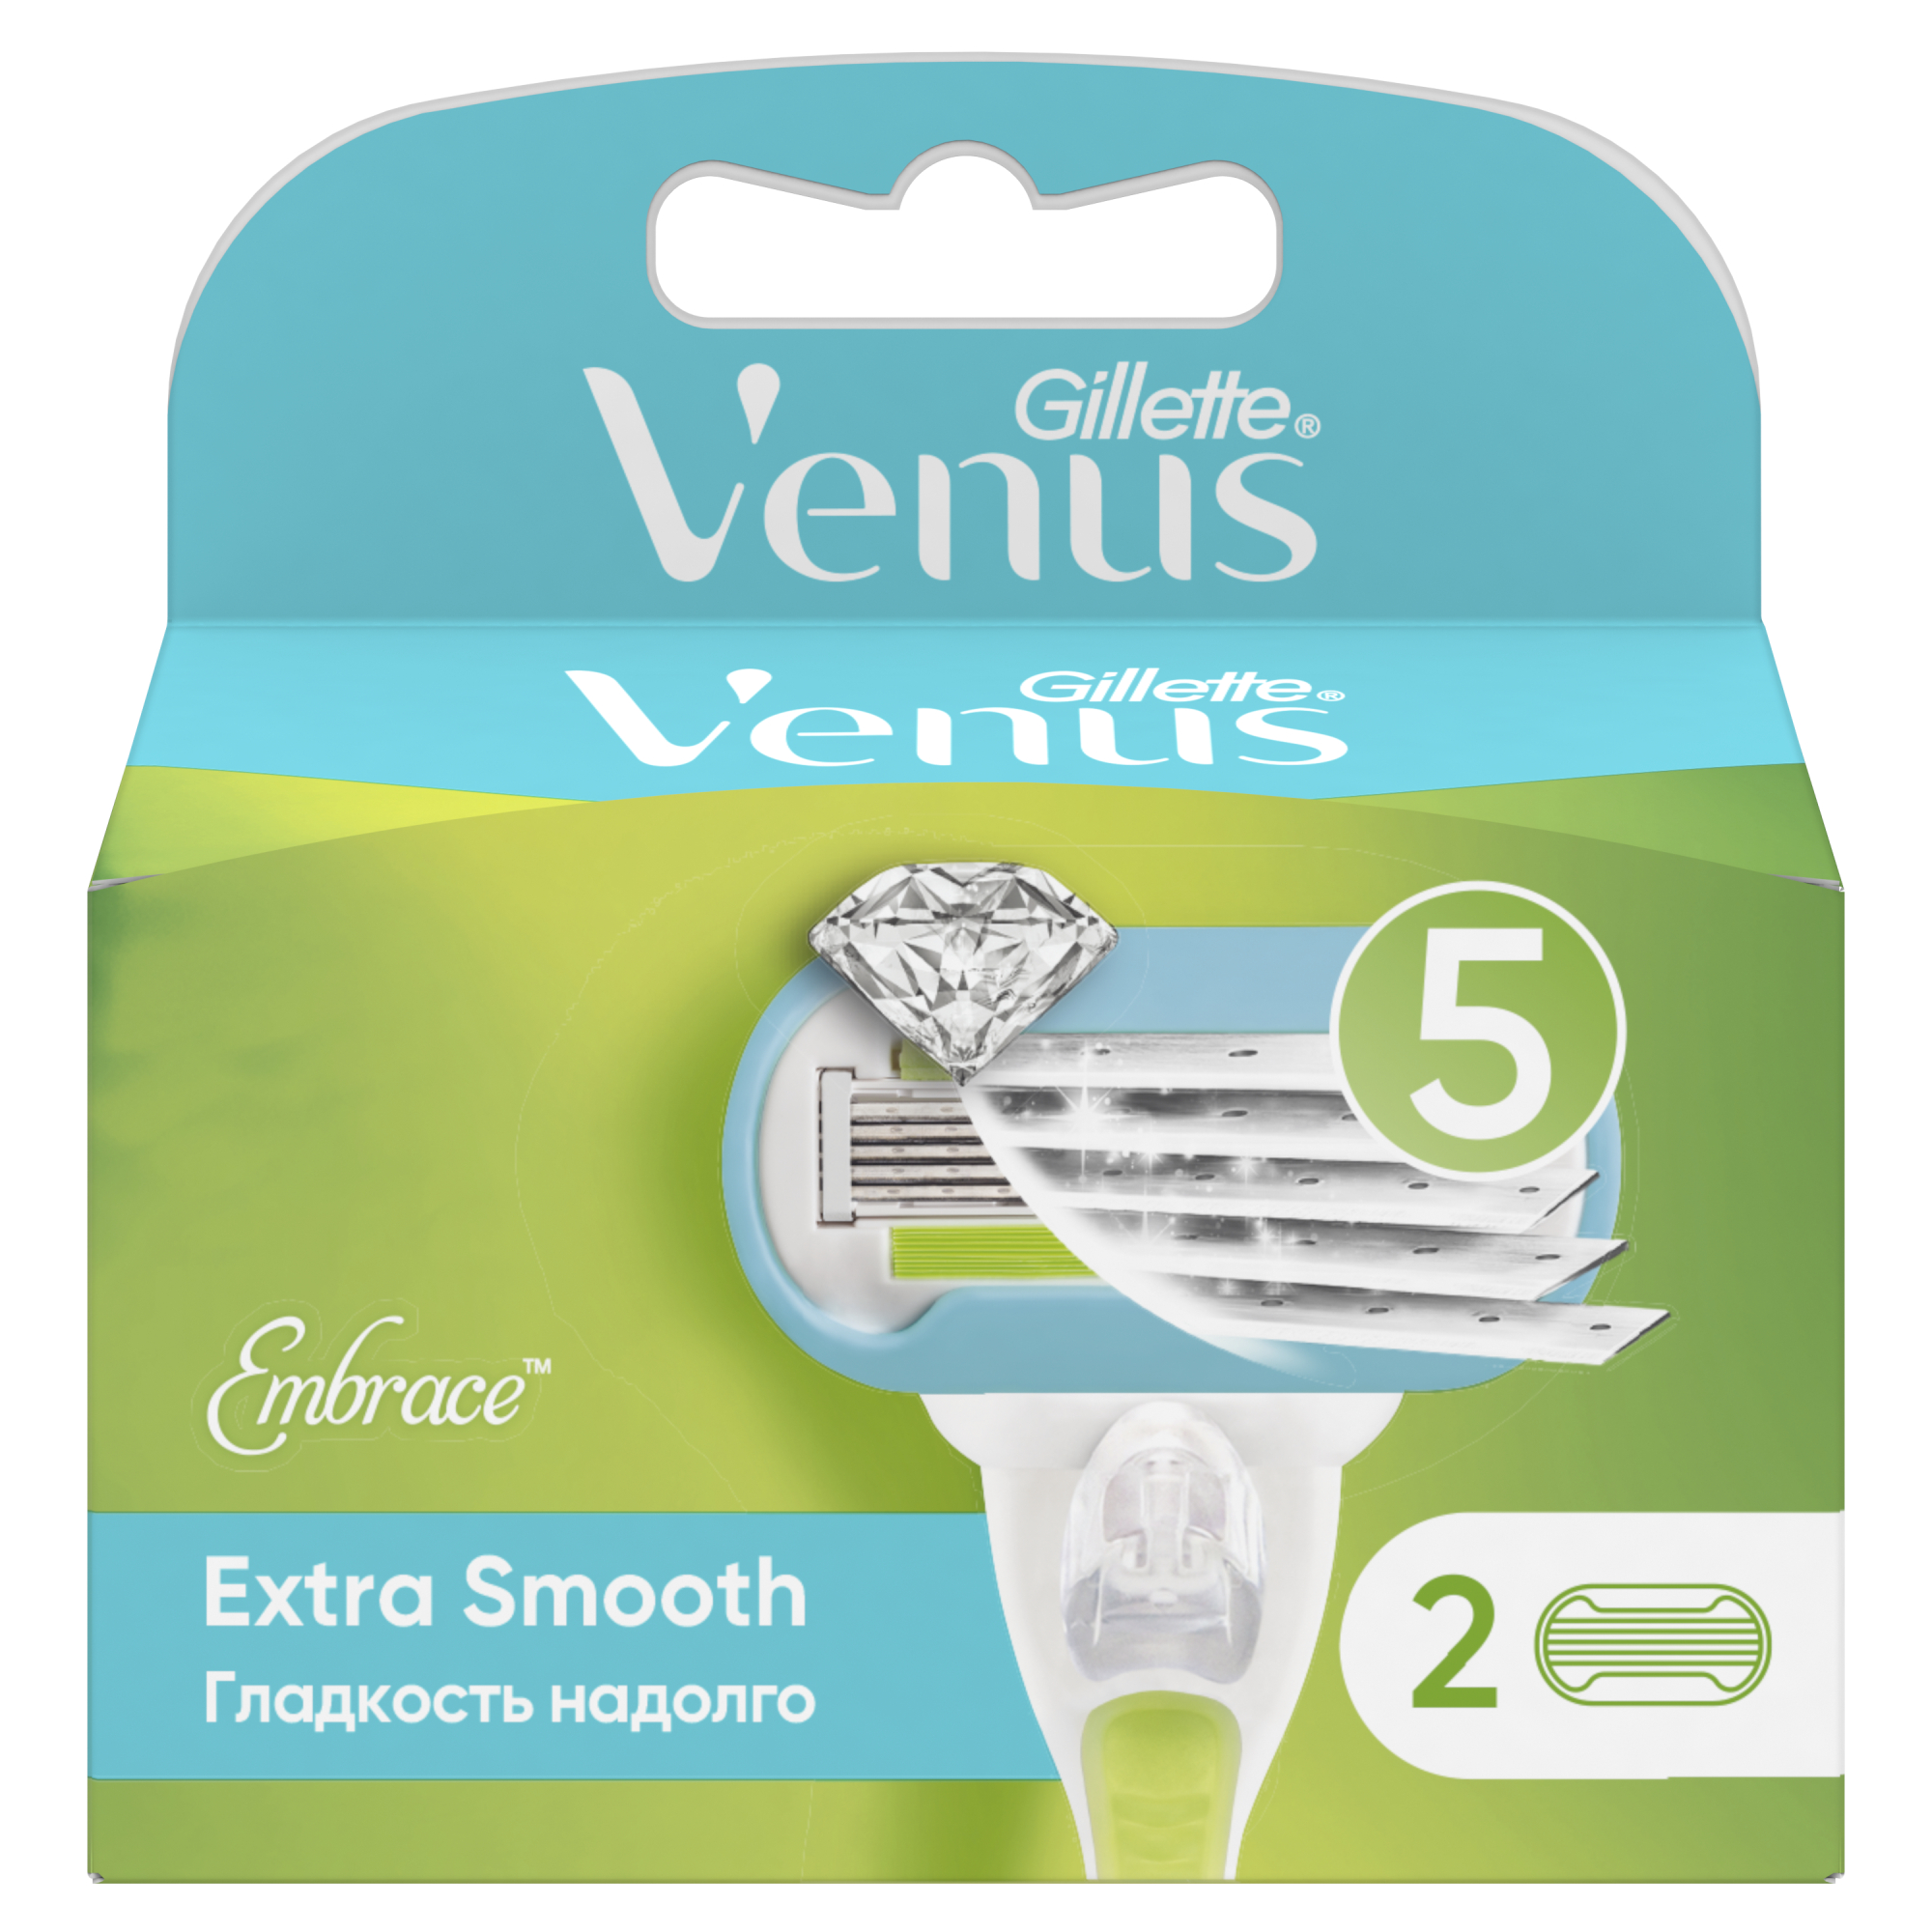 Сменные кассеты для женской бритвы Venus Extra Smooth, 5 лезвий, 2 шт невероятная гладкость надолго сменные кассеты для бритья 16 шт